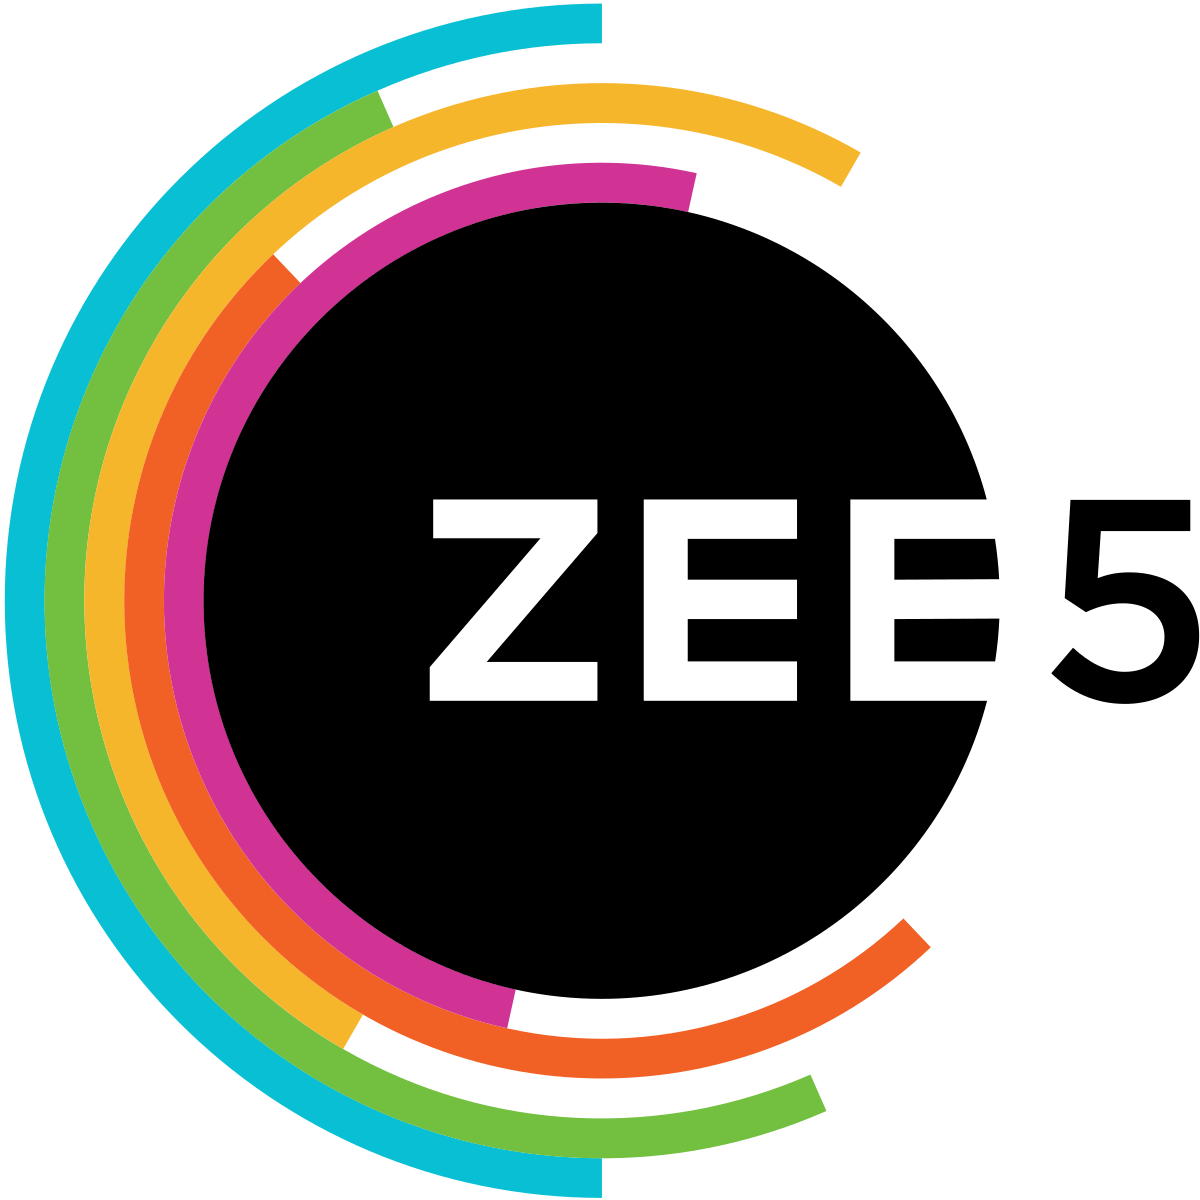 Best 5 Series On ZEE5